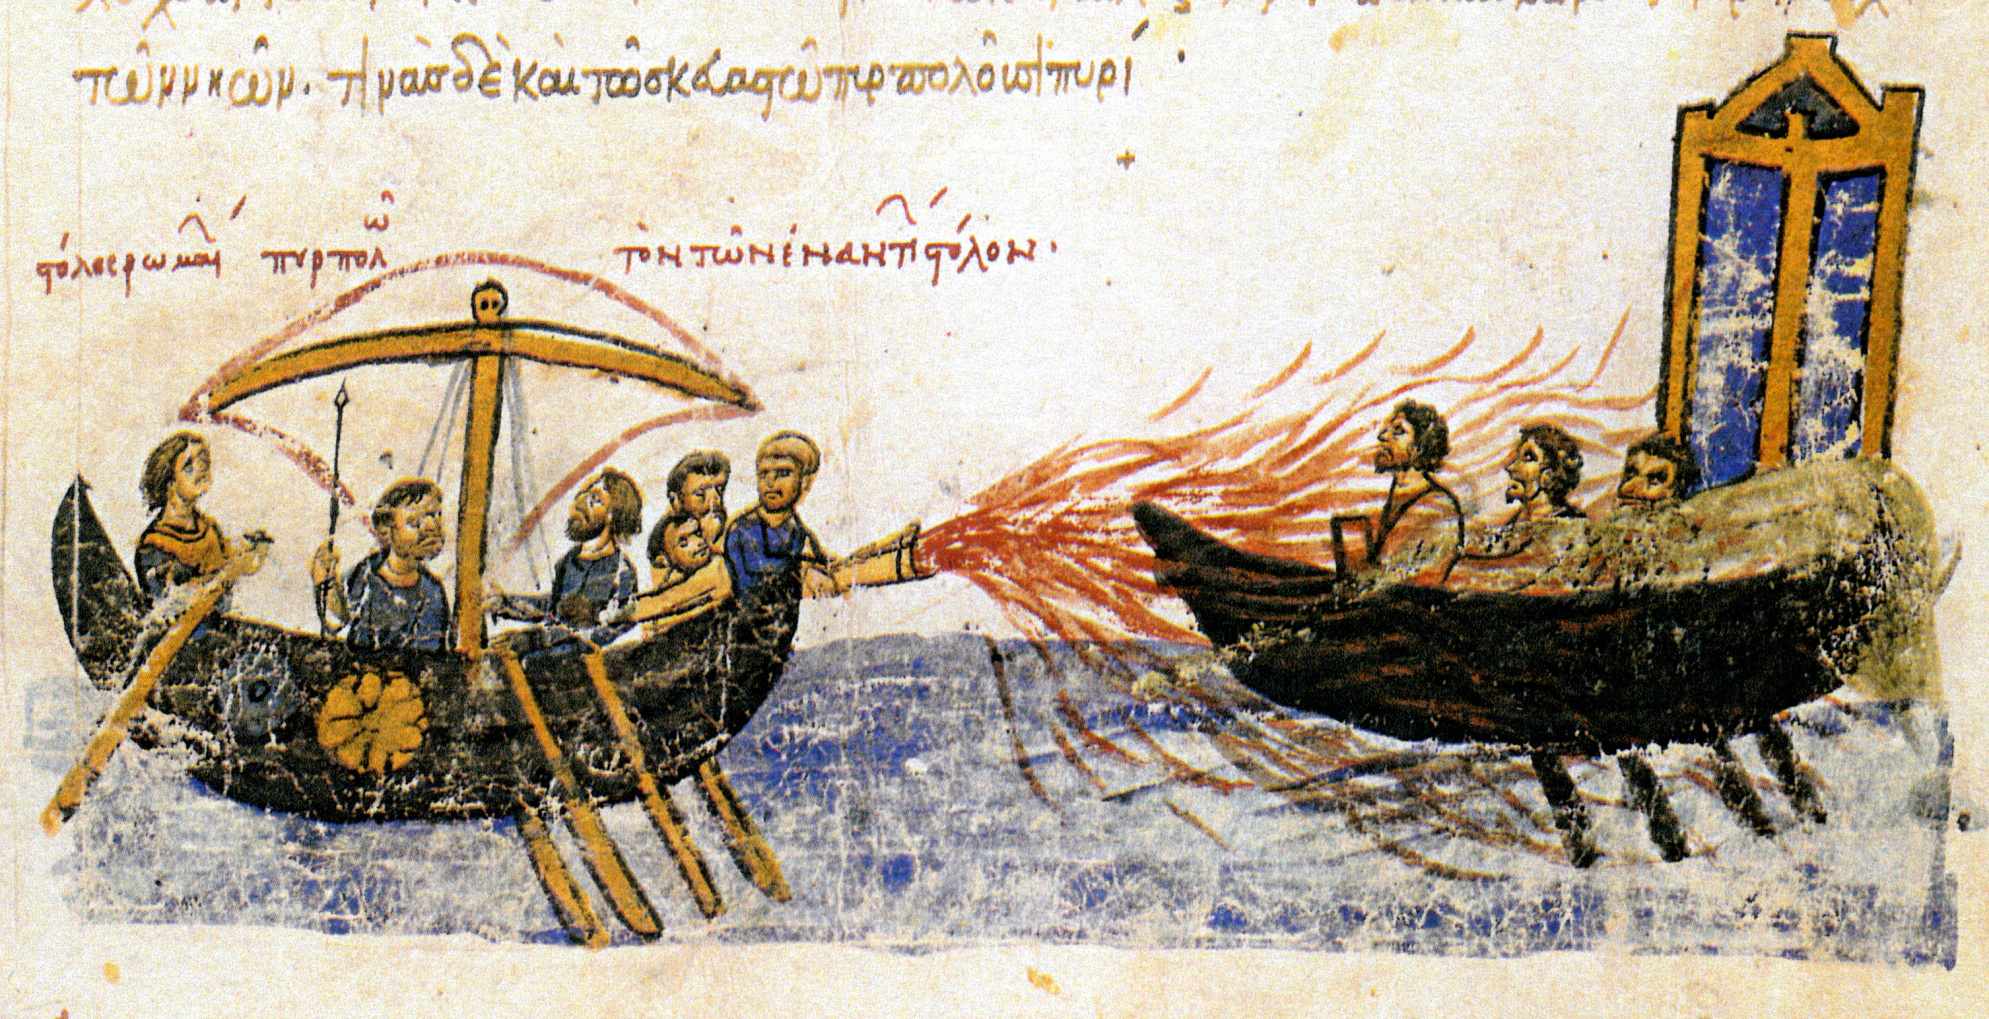 “羅馬艦隊燒毀了對面的艦隊”——一艘拜占庭船用希臘火攻擊一艘屬於叛軍斯拉夫托馬斯的船，821。12 世紀馬德里 Skylitzes 的插圖。